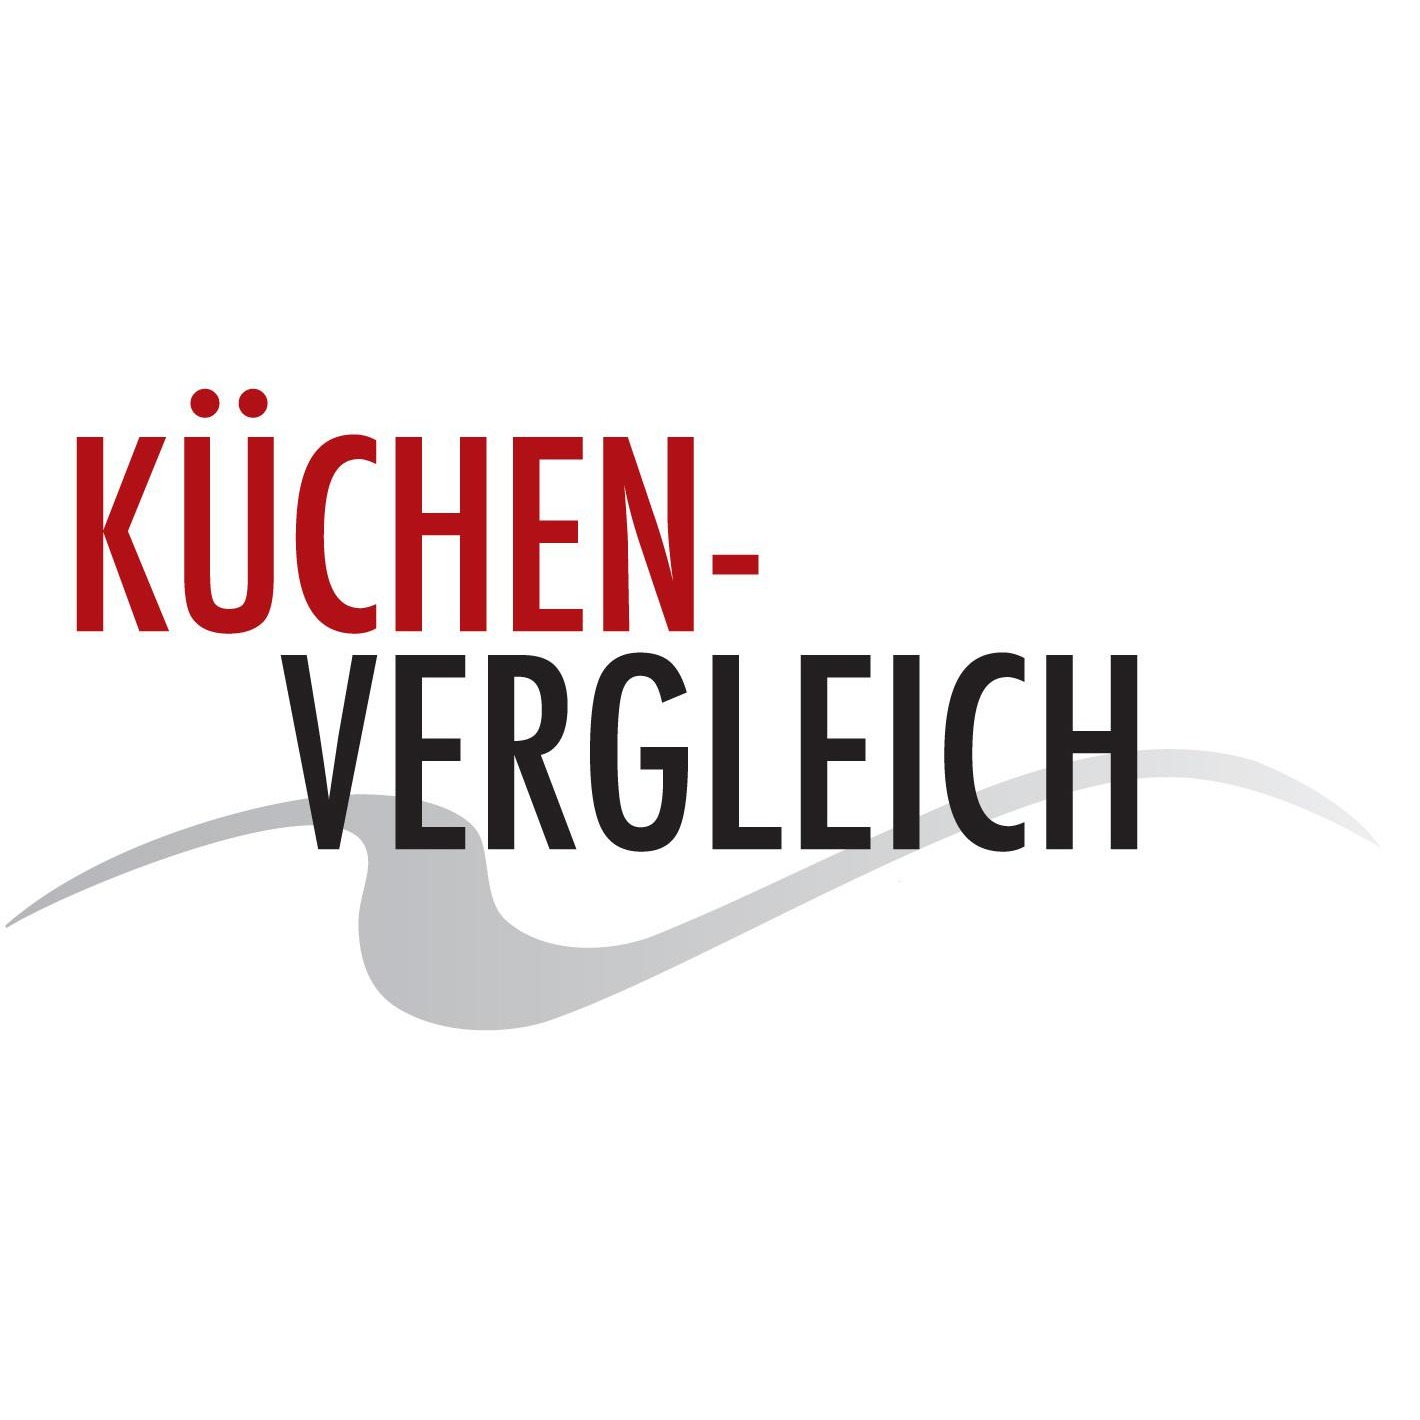 Küchenvergleich Würselen in Würselen - Logo